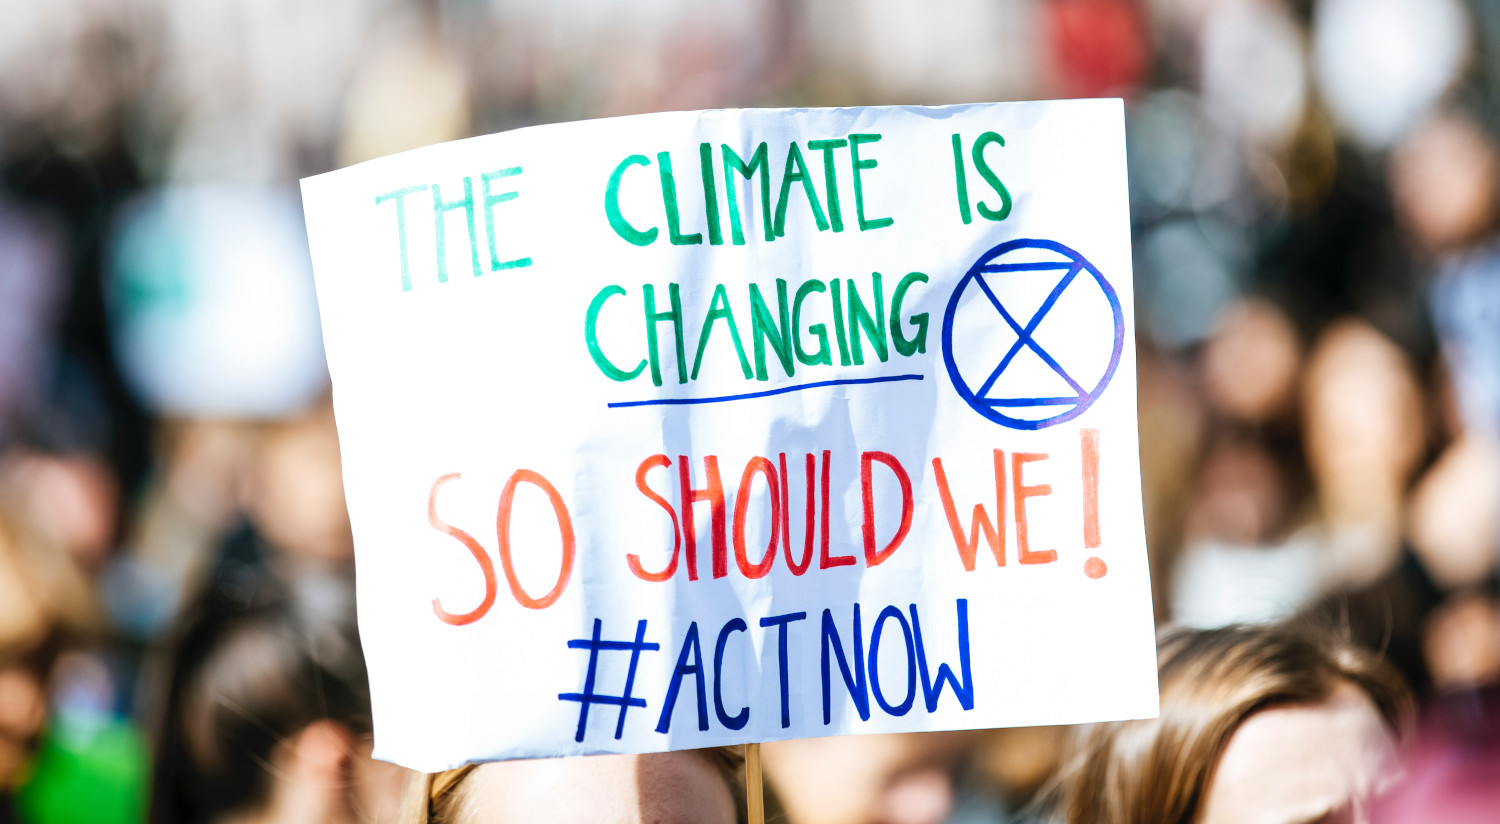 36气候变化组织,知道不能独自解决气候危机。